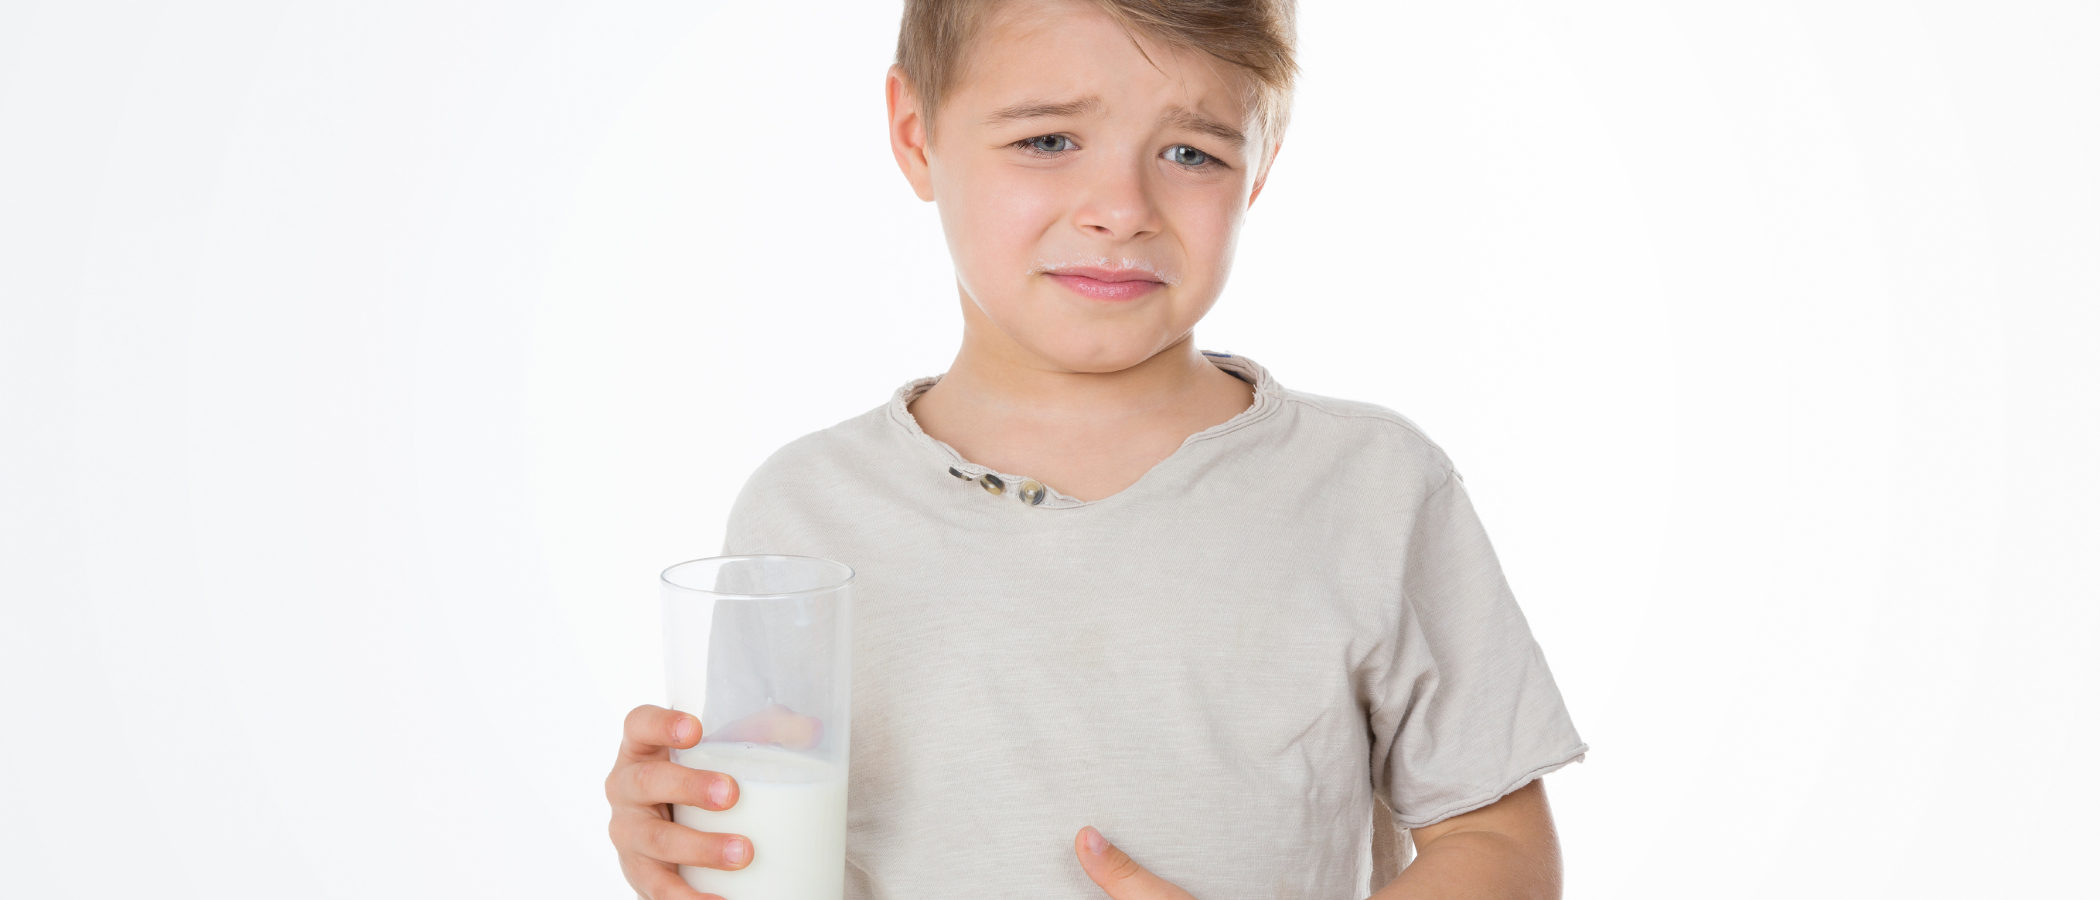 Intolerancia a la lactosa en niños